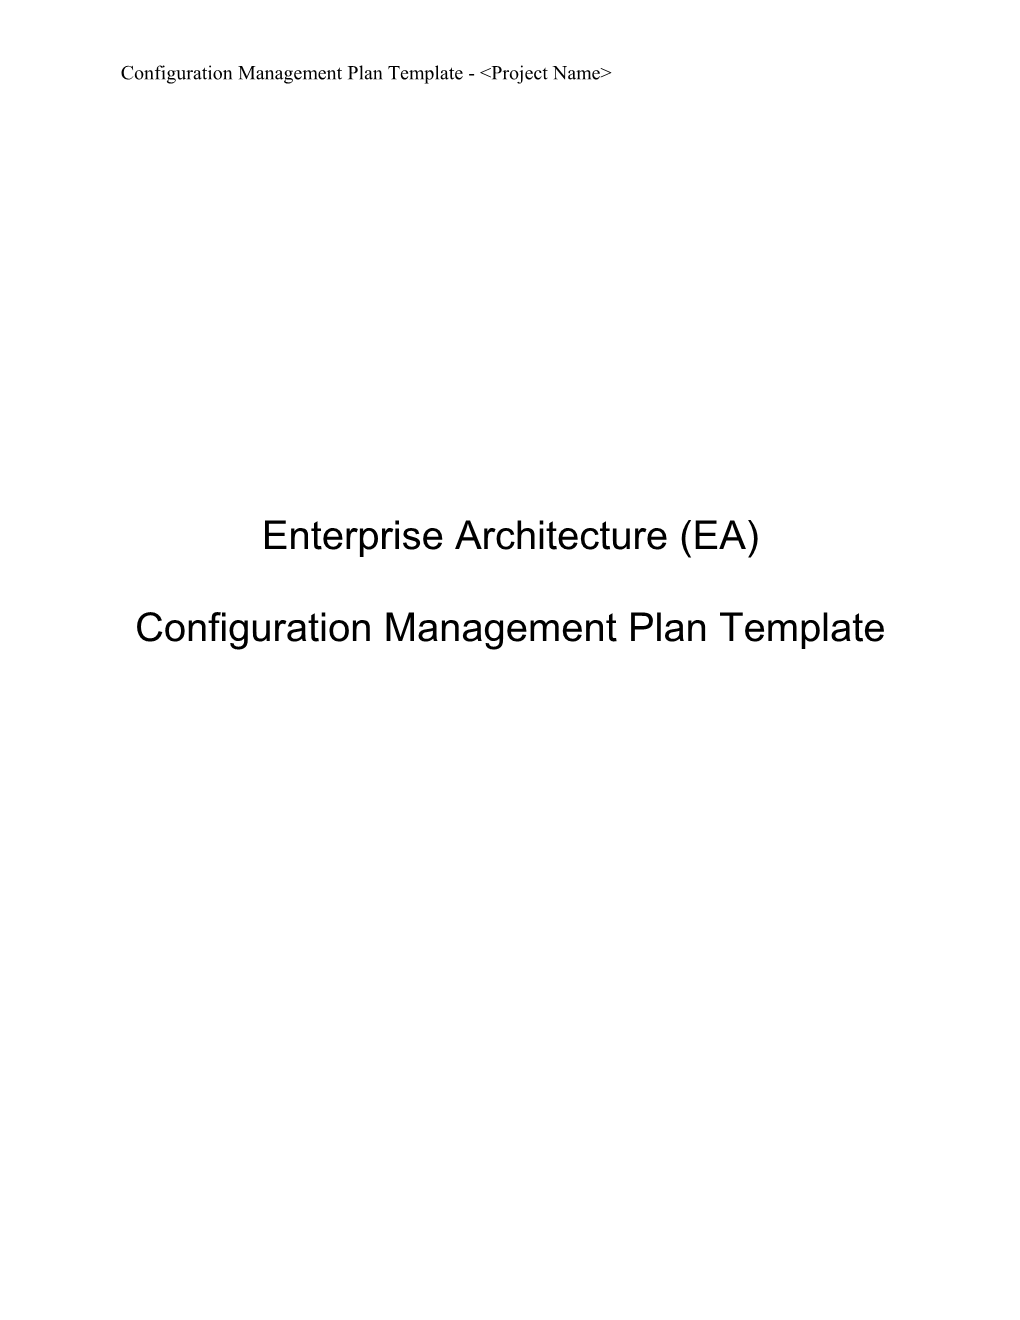 Enterprise Architecture (EA) CM Plan